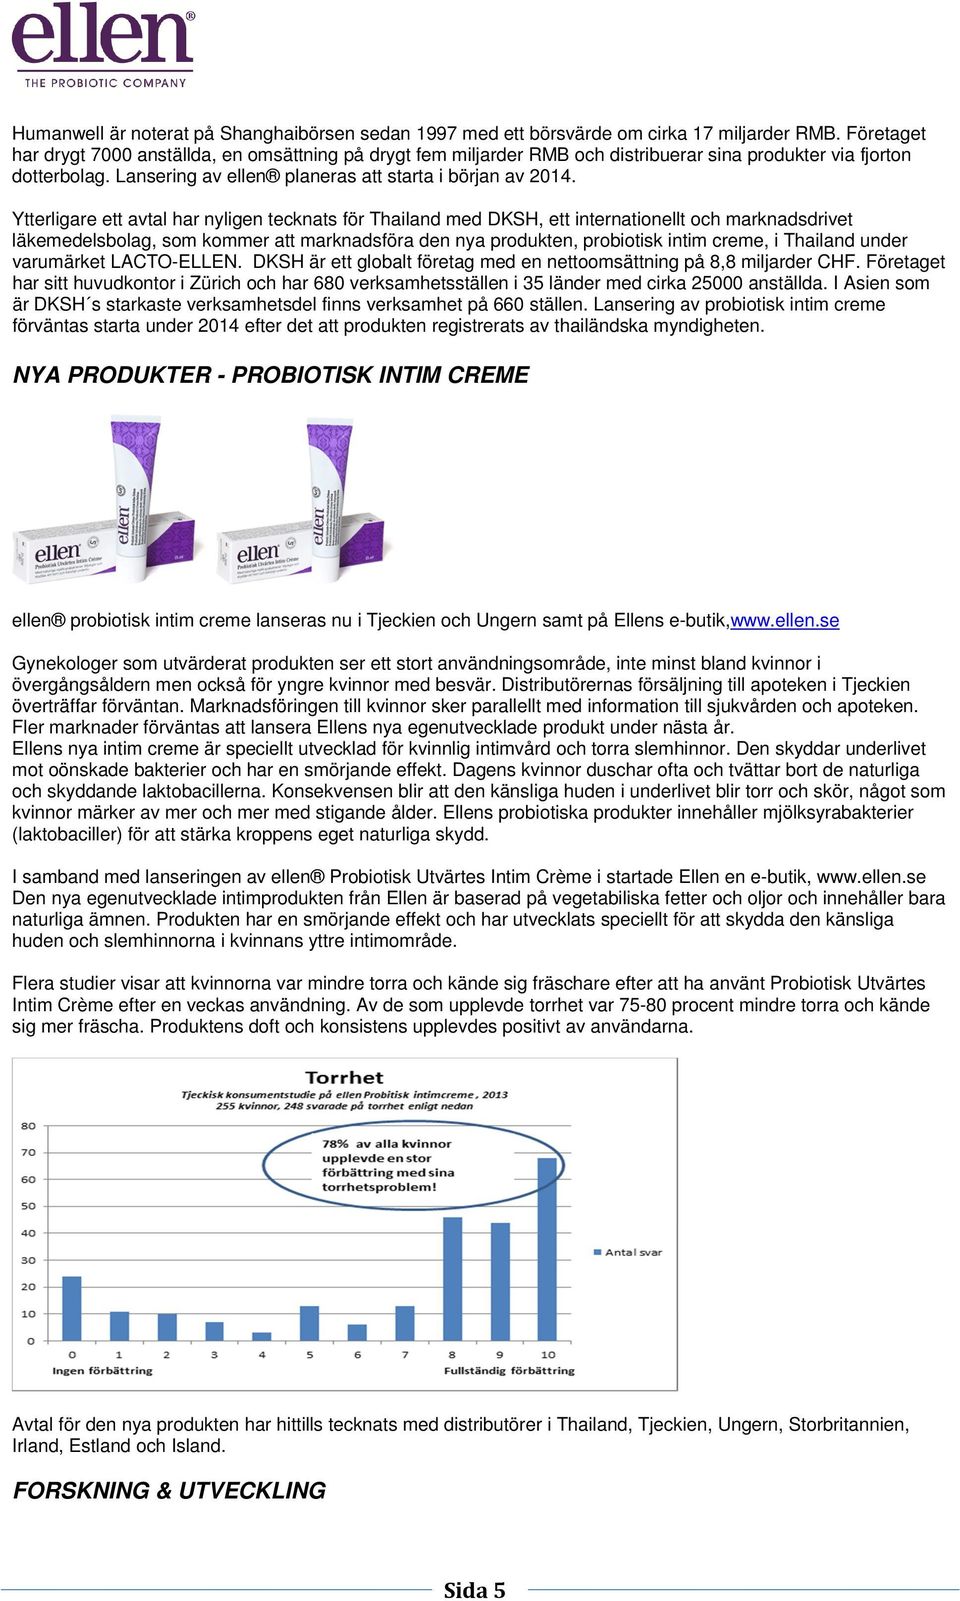 Ytterligare ett avtal har nyligen tecknats för Thailand med DKSH, ett internationellt och marknadsdrivet läkemedelsbolag, som kommer att marknadsföra den nya produkten, probiotisk intim creme, i